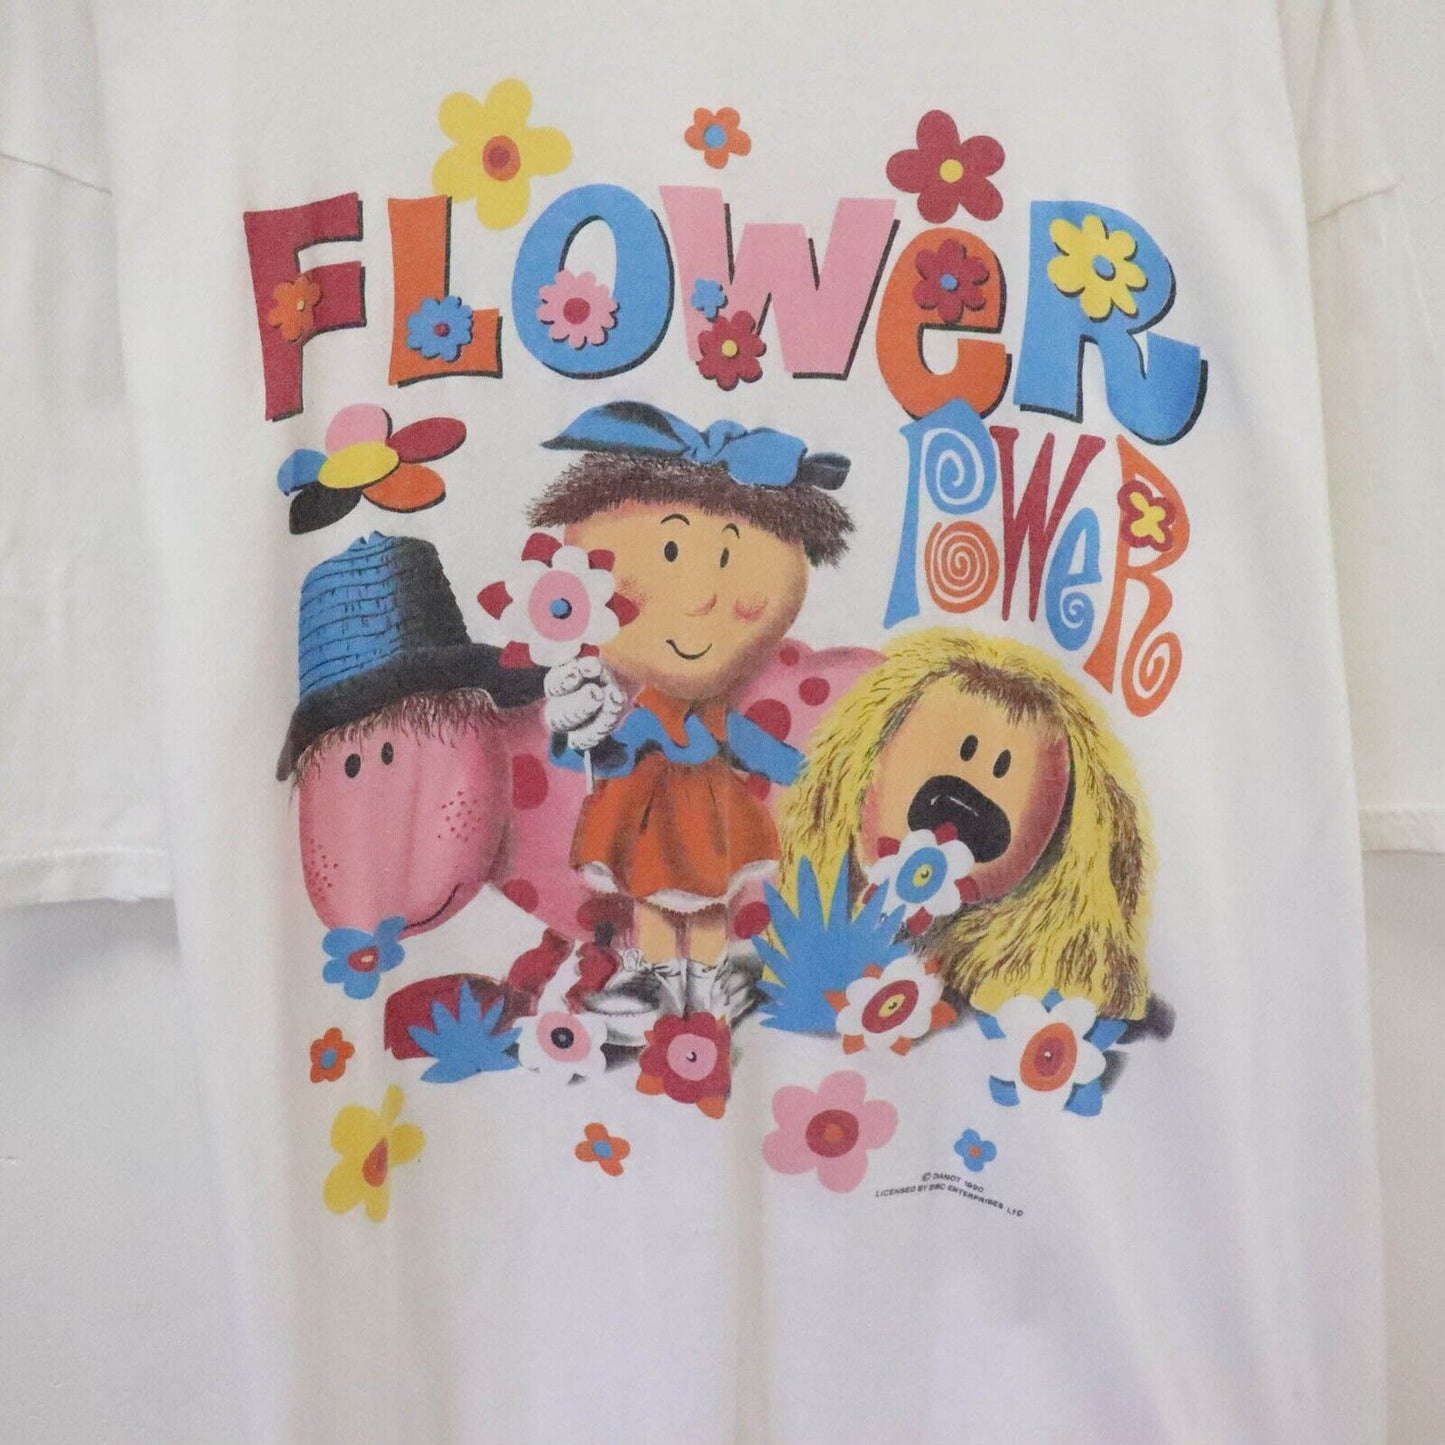 1990 Magic Roundabout Flower Power BBC T-Shirt Size L